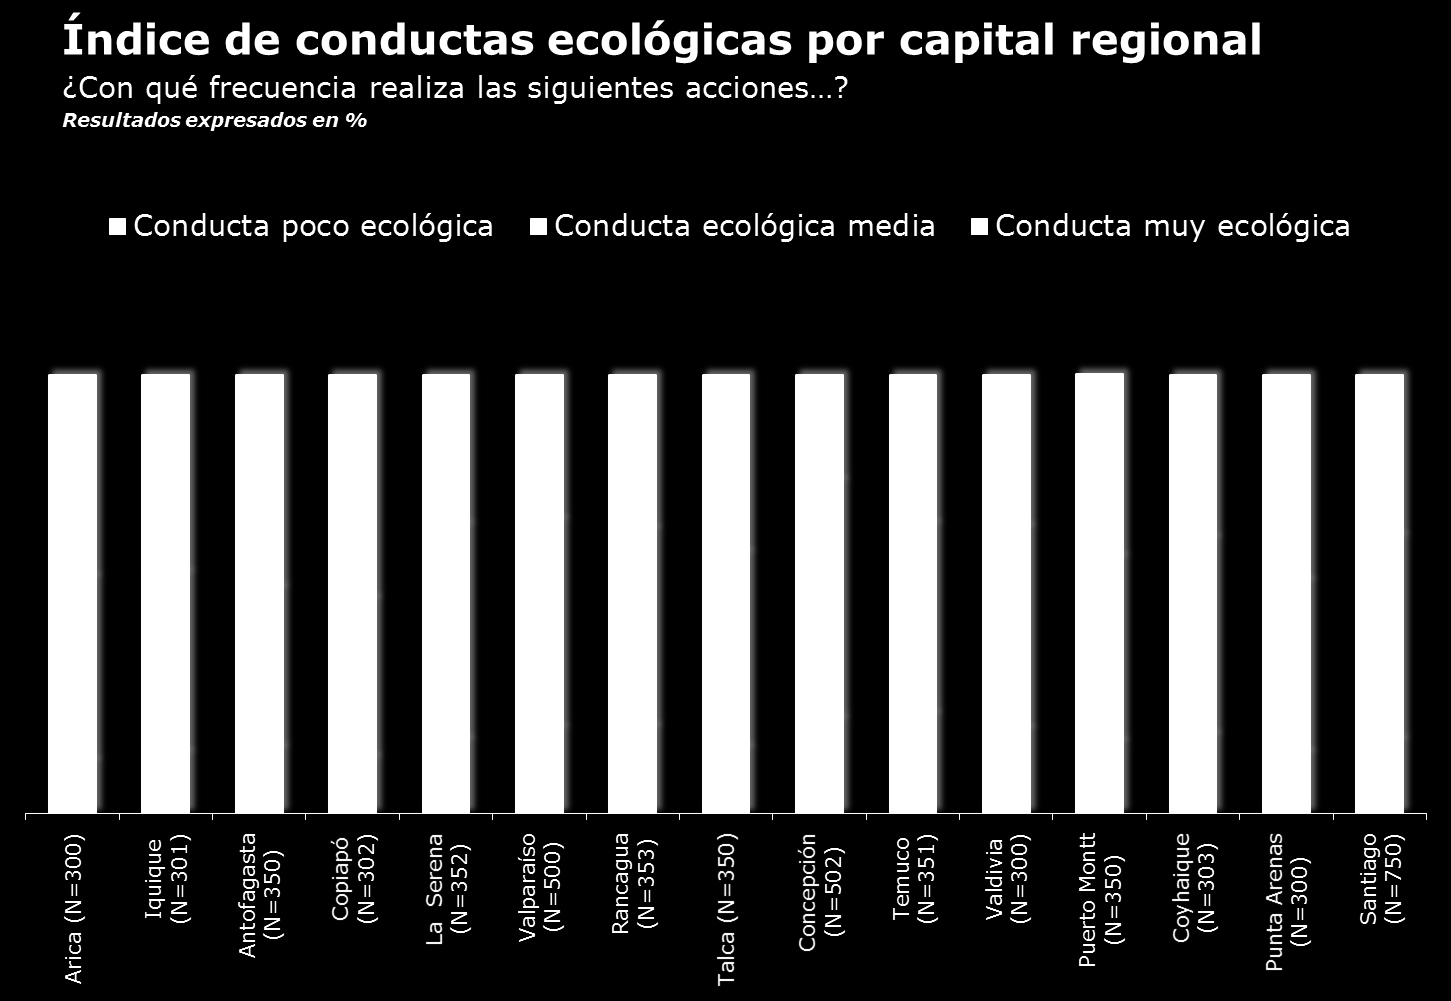 conducta más ecológica respecto a las demás regiones, por el contrario, Concepción es la menos ecológica según el índice